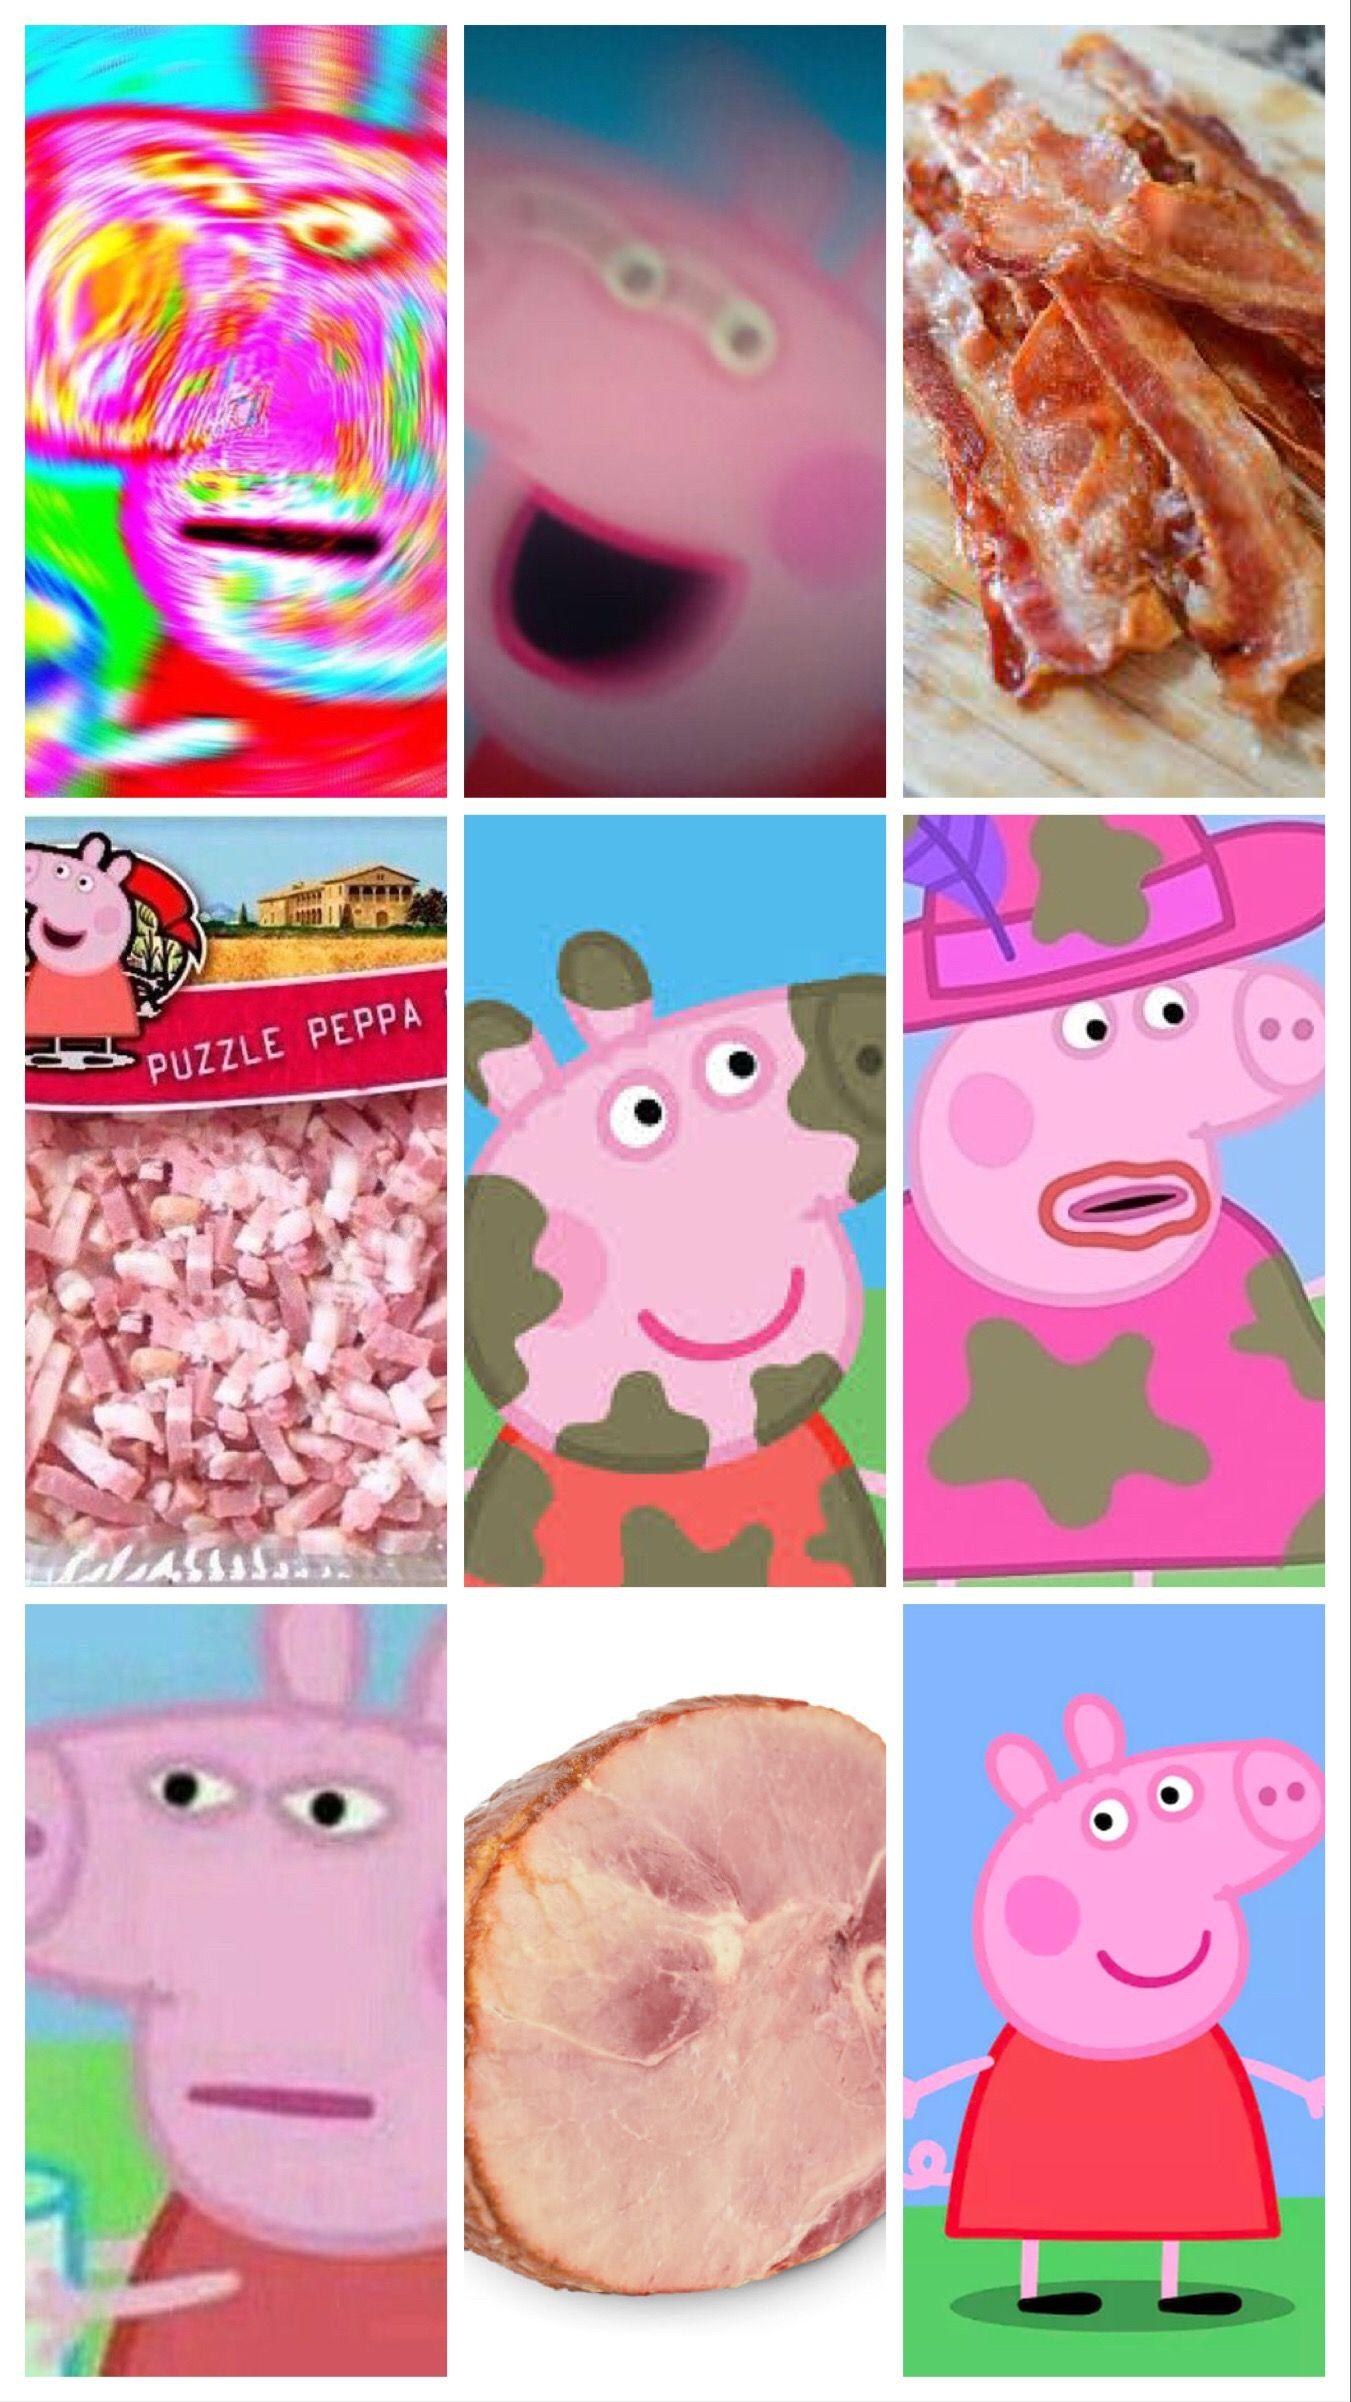 Peppa pig wallpapers